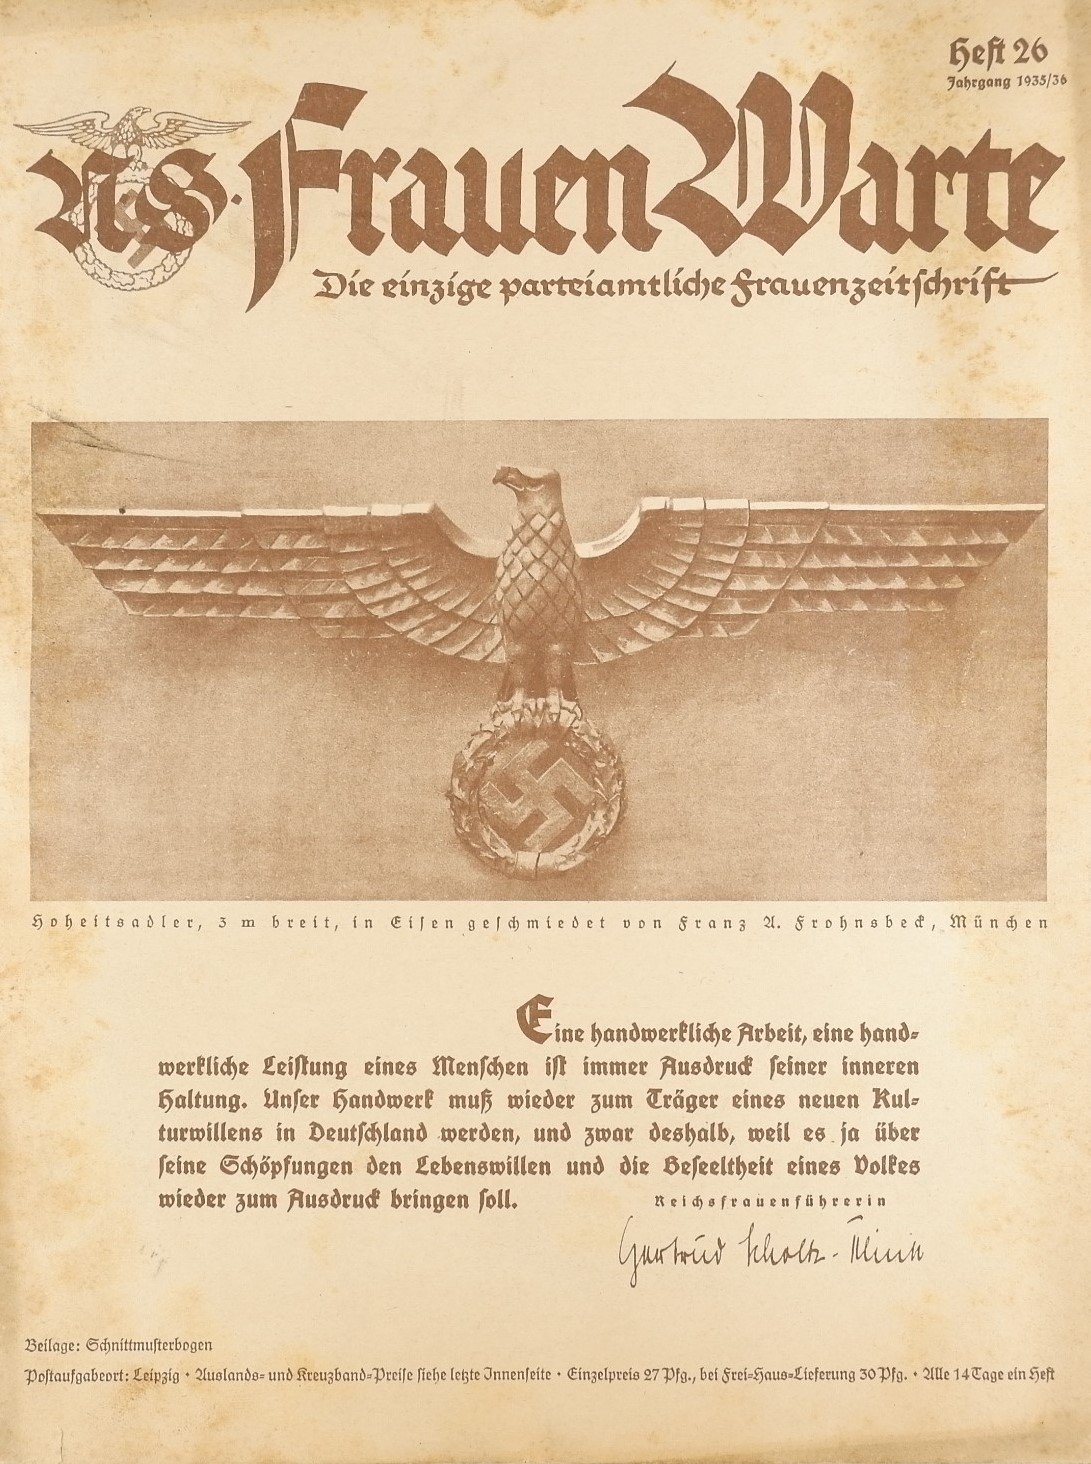 Frauen Warte – Die einzige parteiamtliche Frauenzeitschrift Heft 26 1935/36 (Volkskunde- und Freilichtmuseum Roscheider Hof RR-F)